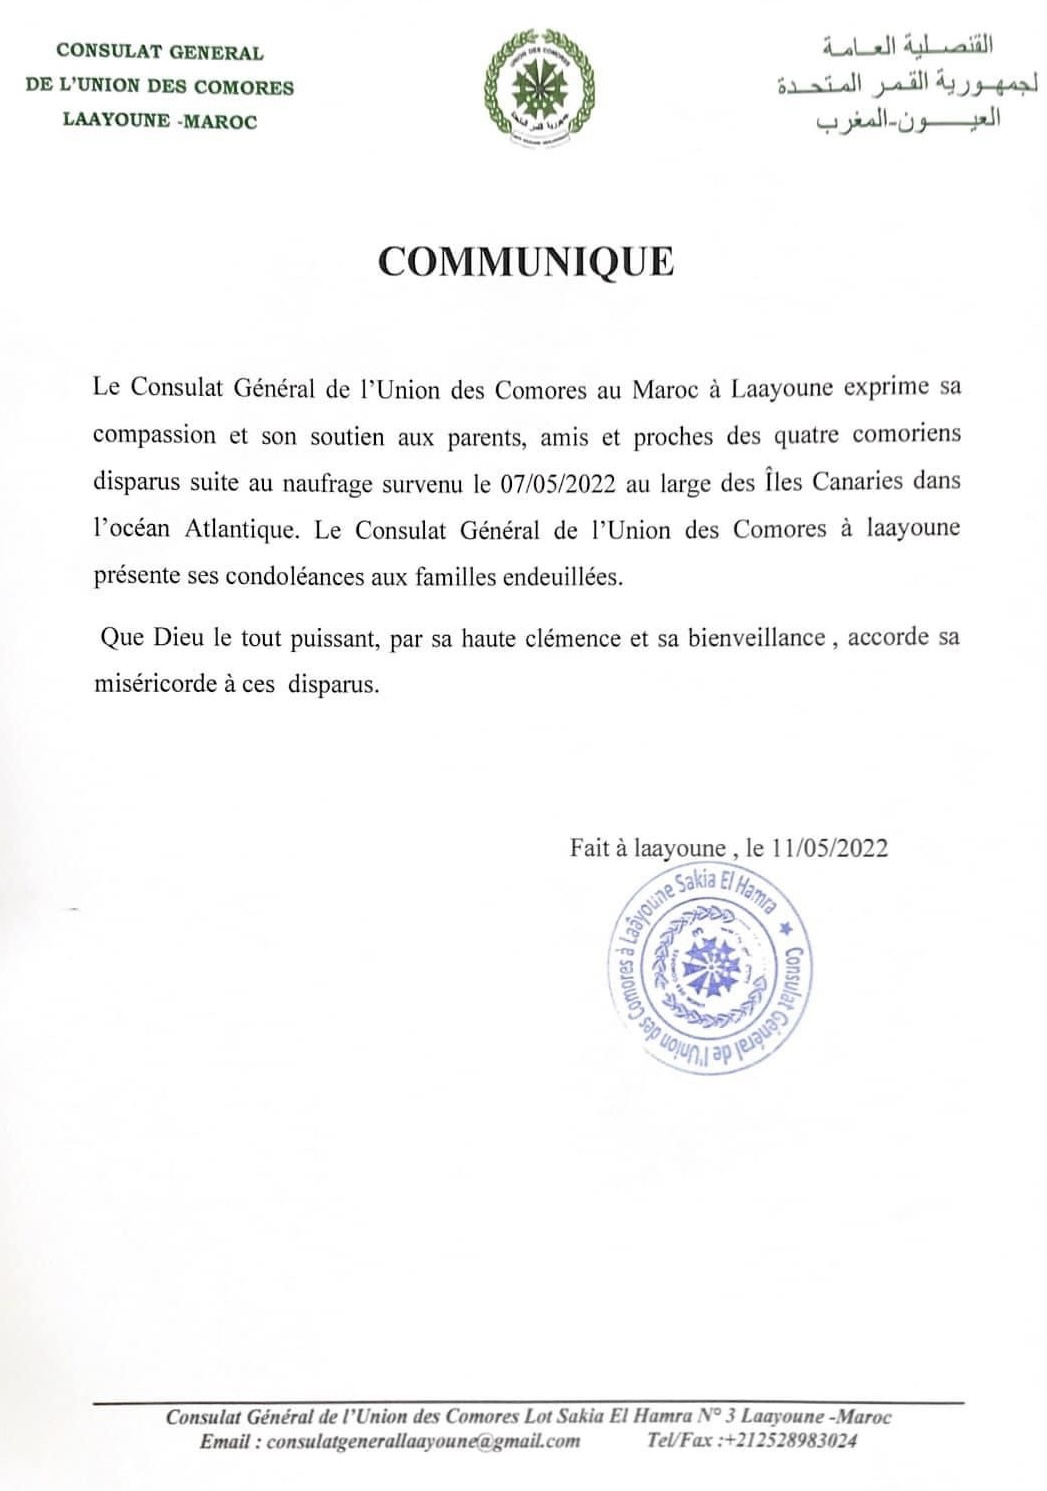 Comoriens disparus : Communiqué du Consulat des Comores à Laâyoune